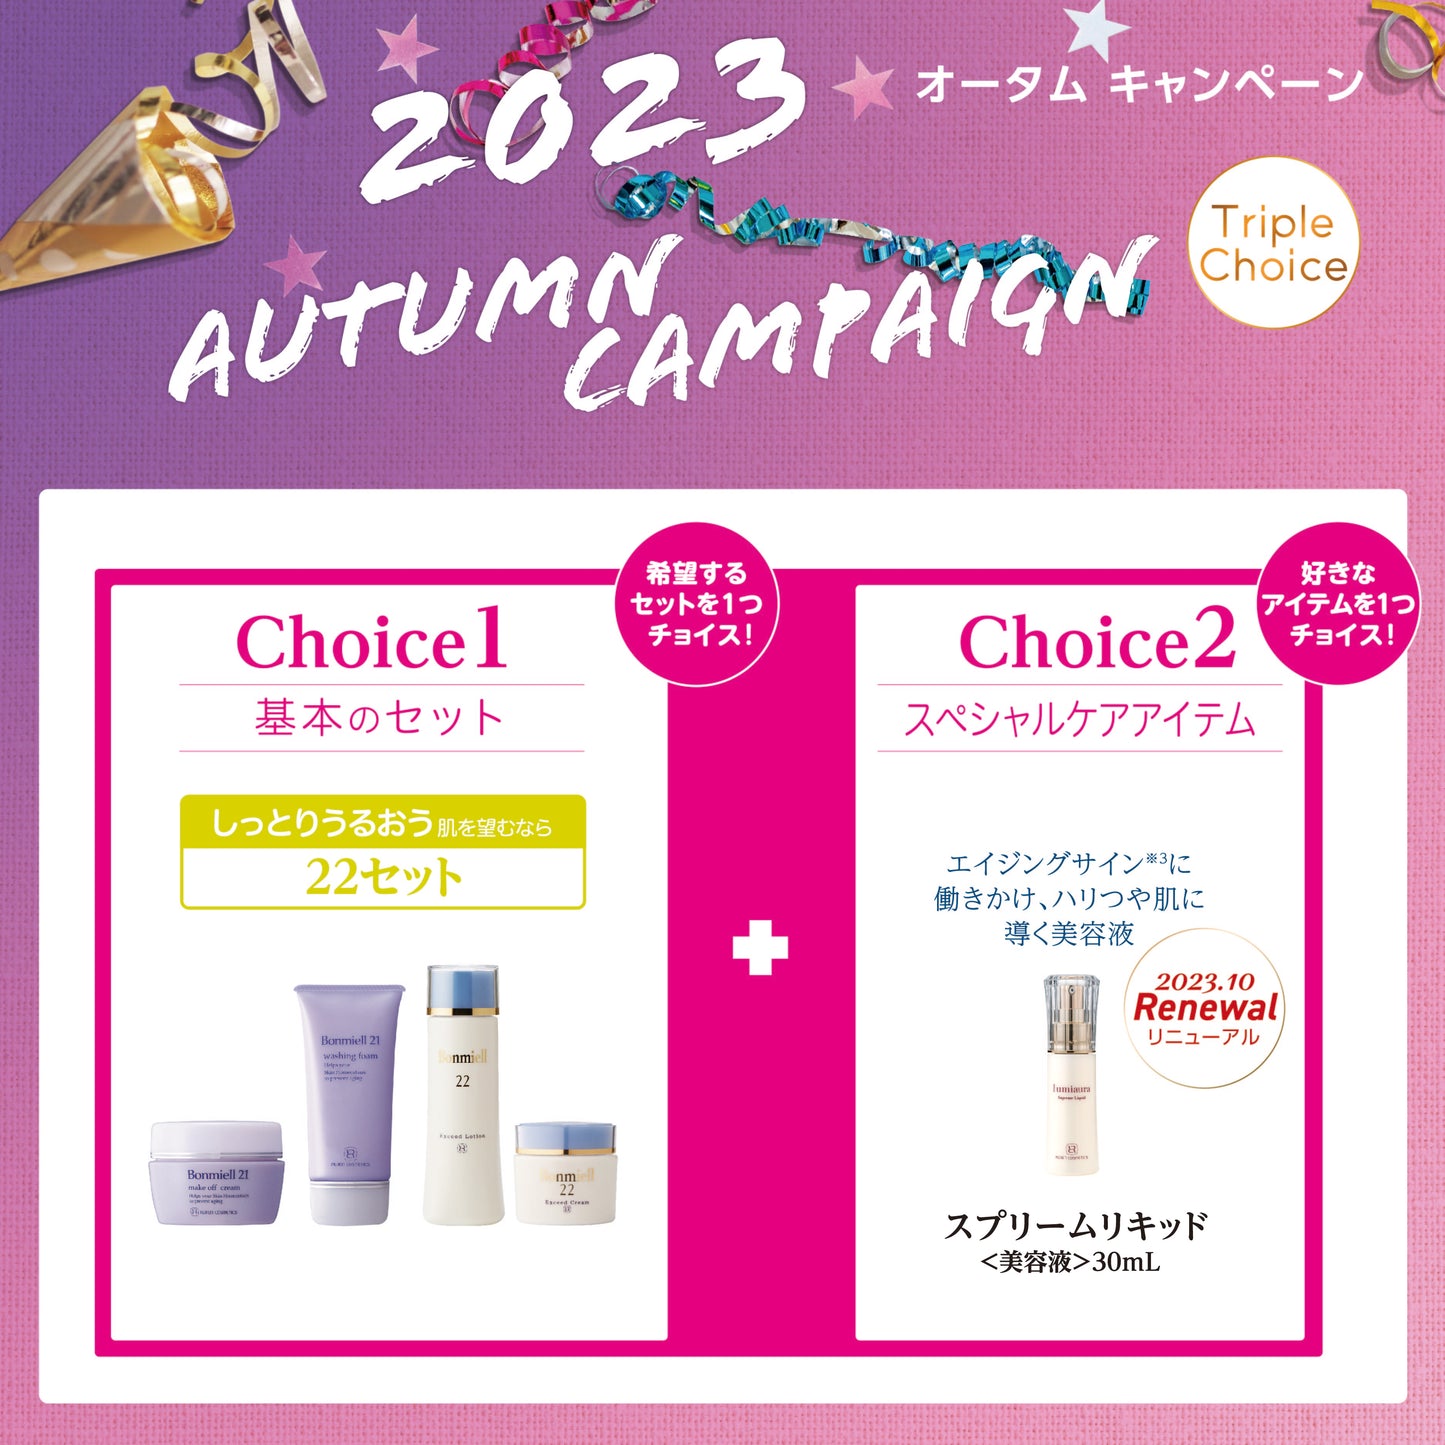 【New】2023 Autumn Campaign 22 Set